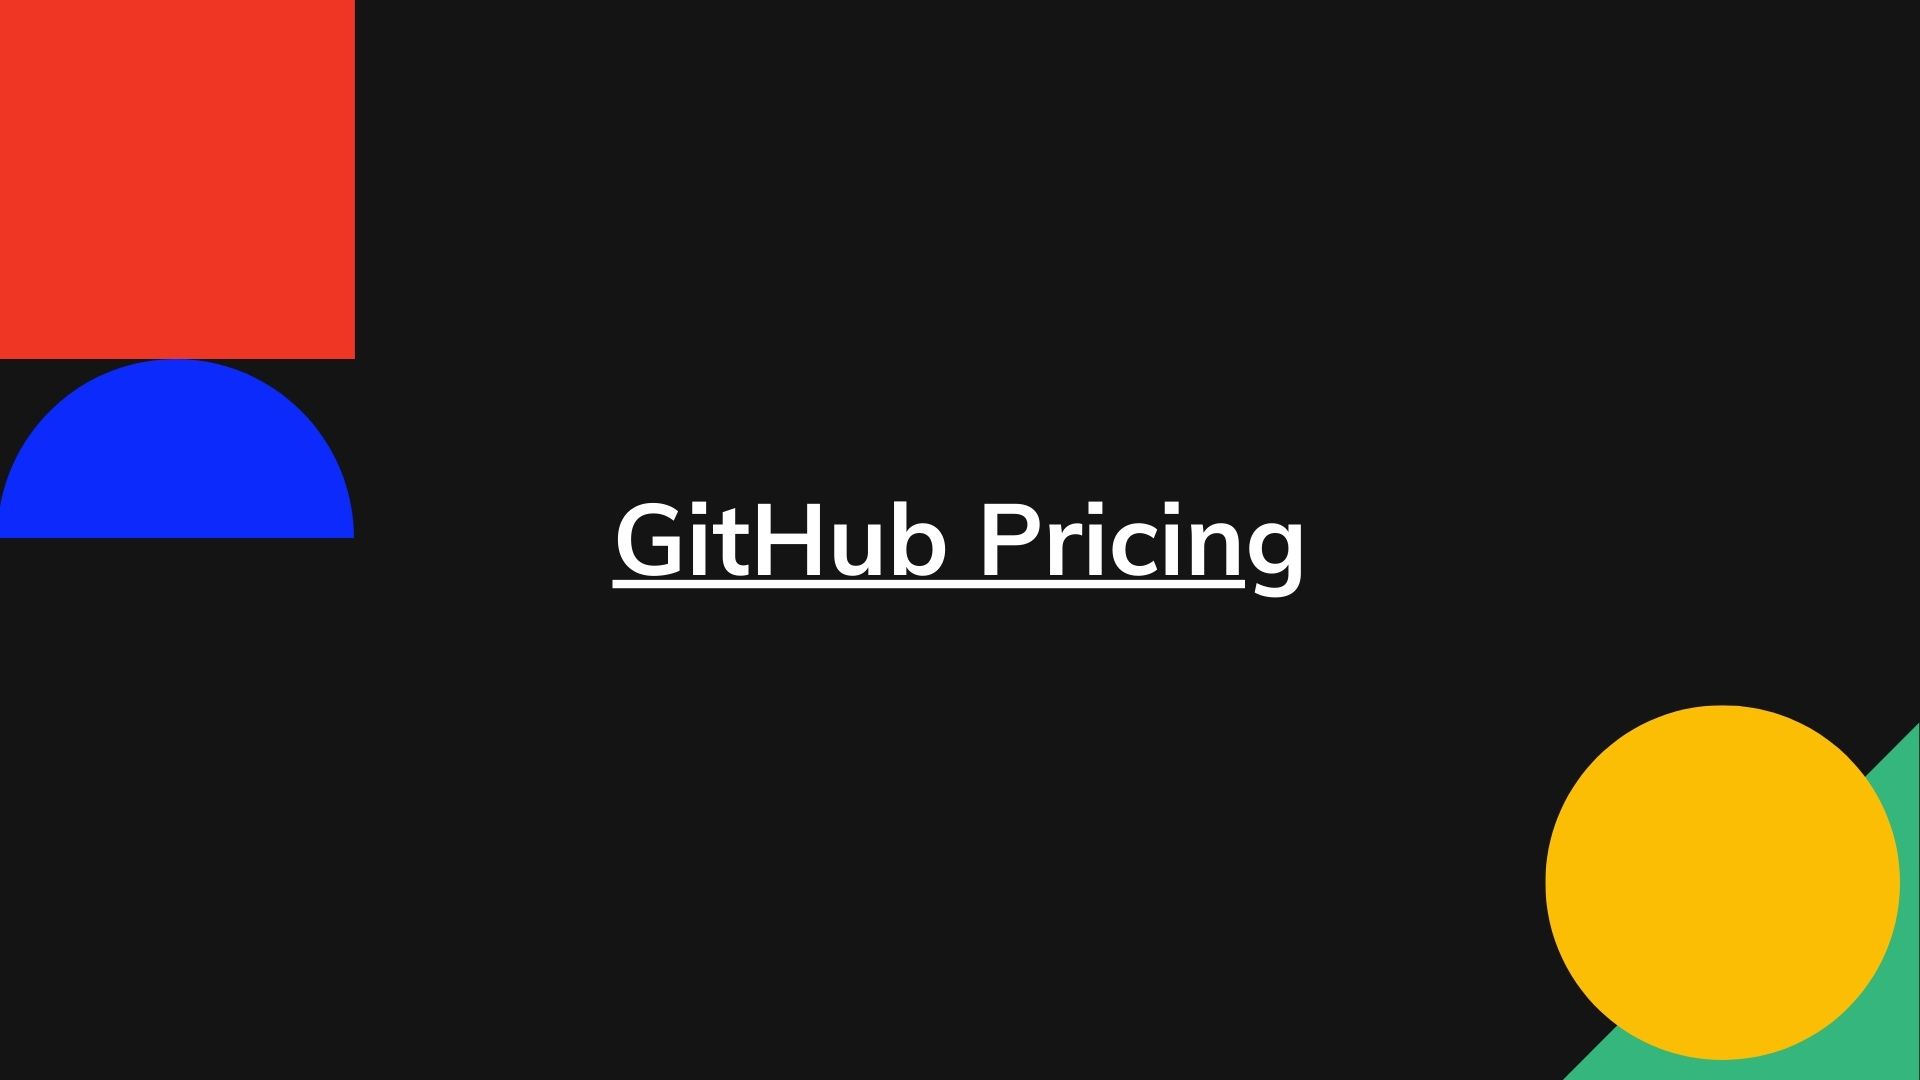 GitHub pricing